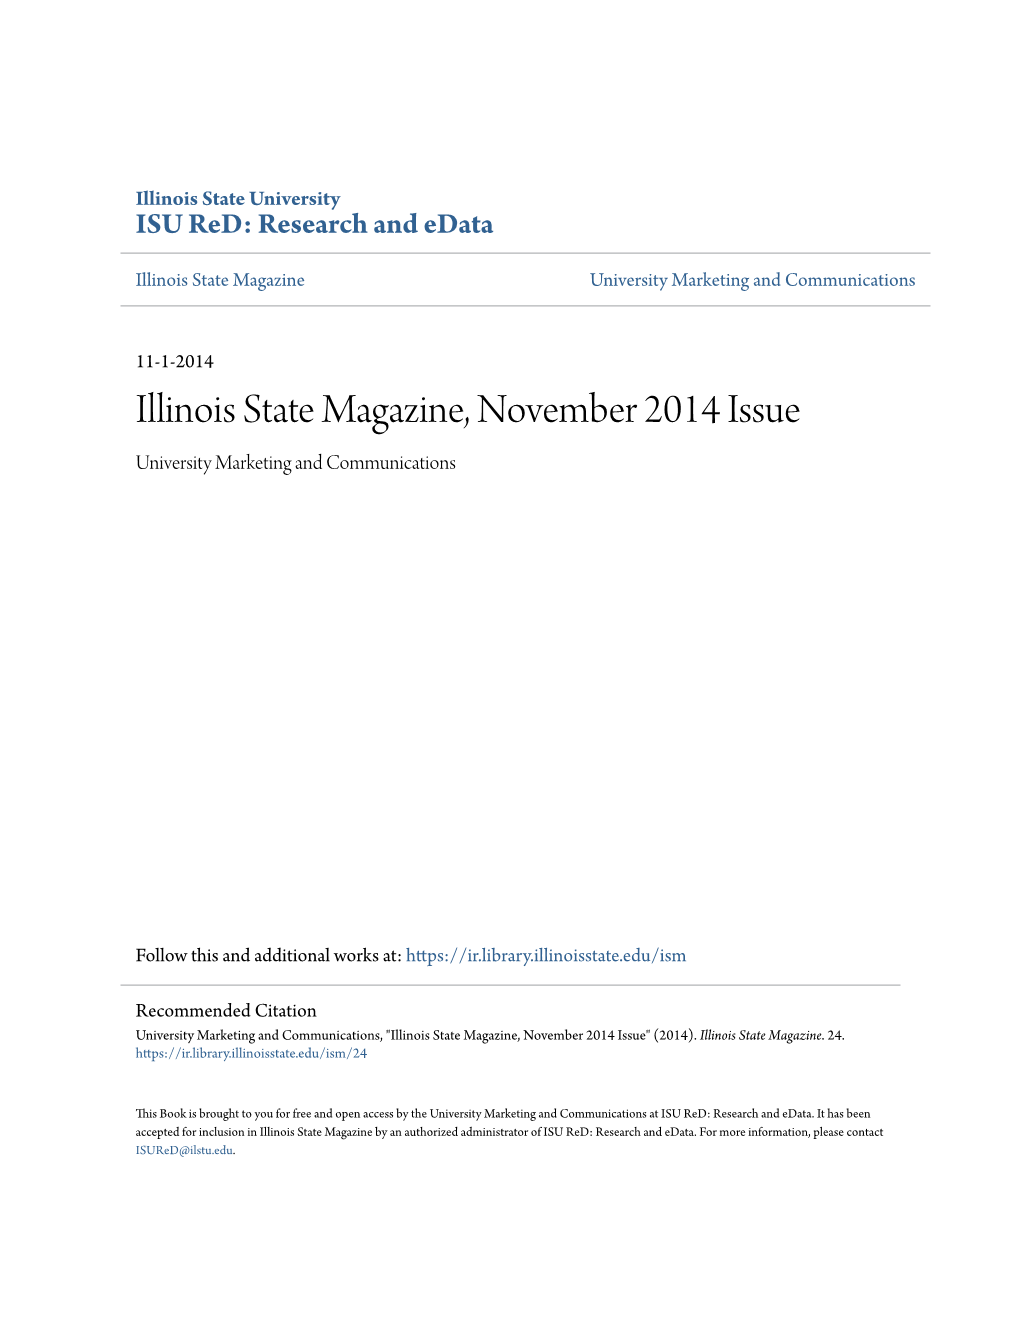 Illinois State Magazine, November 2014 Issue University Marketing and Communications